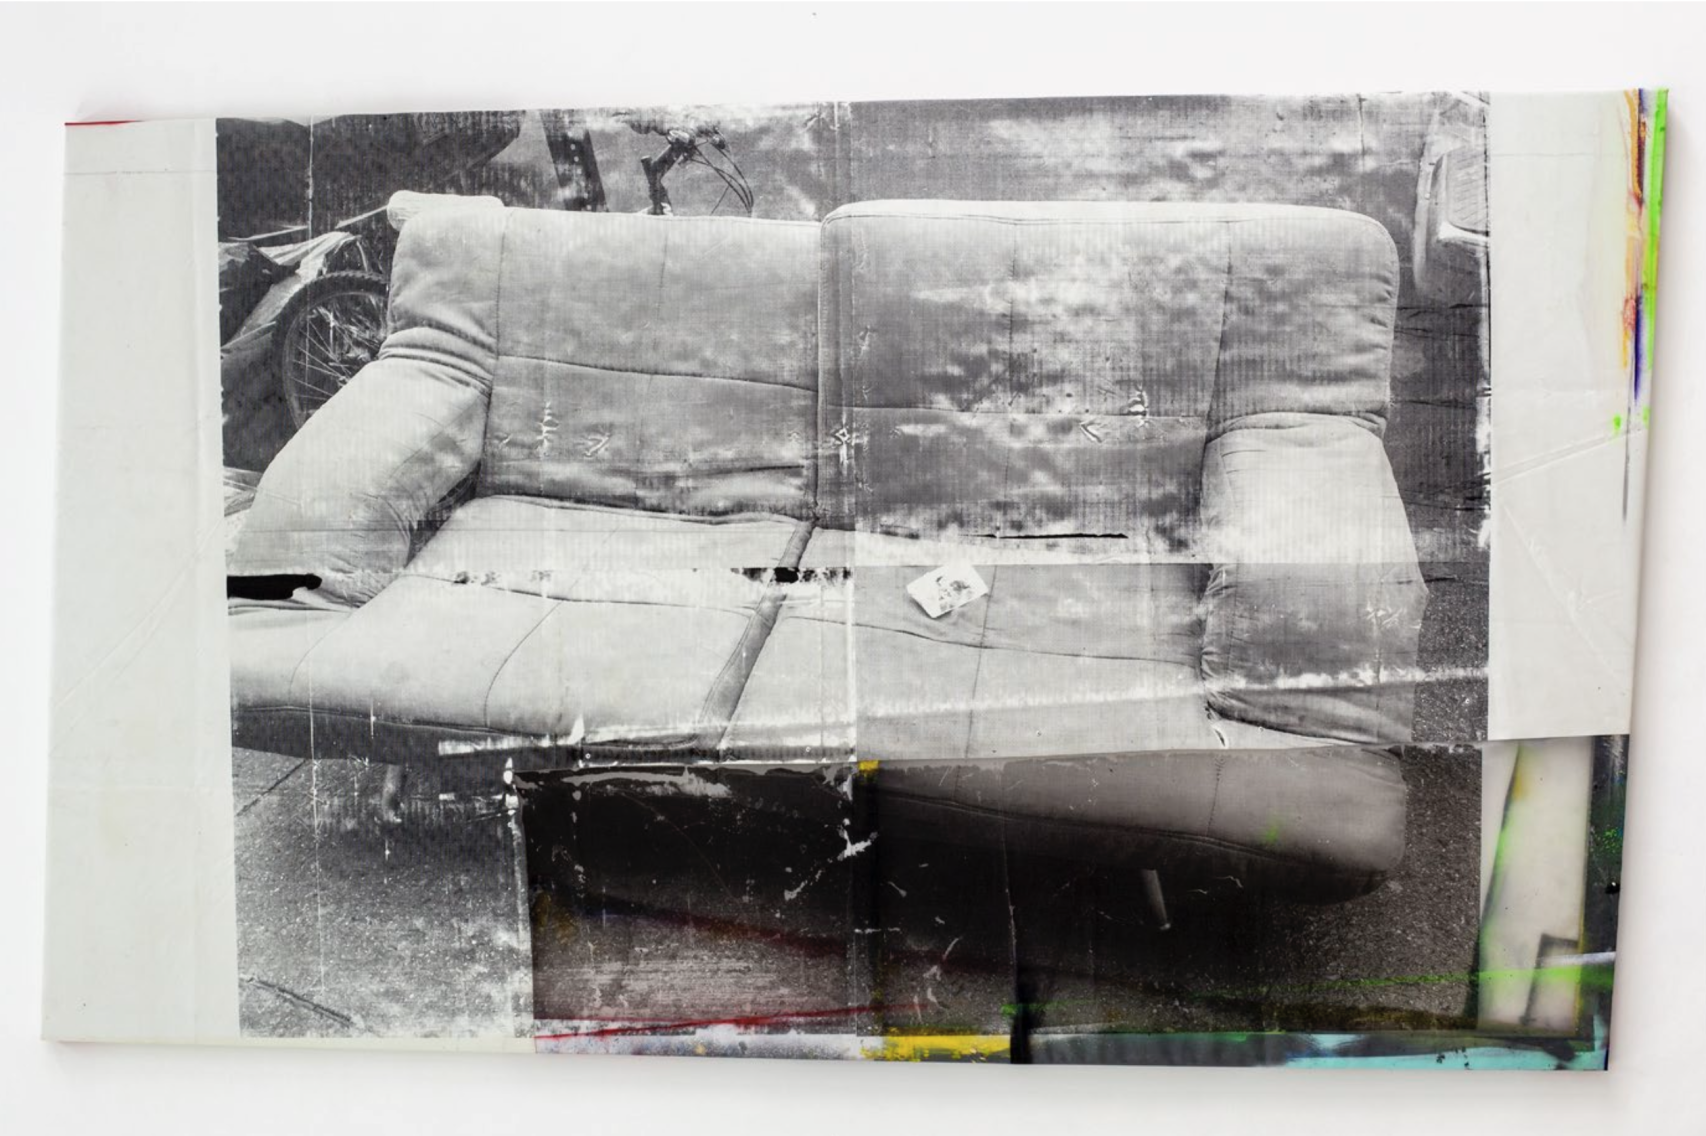 *Ordinary Objects for Common Use (Couch on ashes)*, 2021, impression par sérigraphie sur bâche, polyéthylène, peinture en bombe, acrylique, bois, rivets, 210 x 135 cm. Courtesy the artist & Spiaggia Libera, Paris.